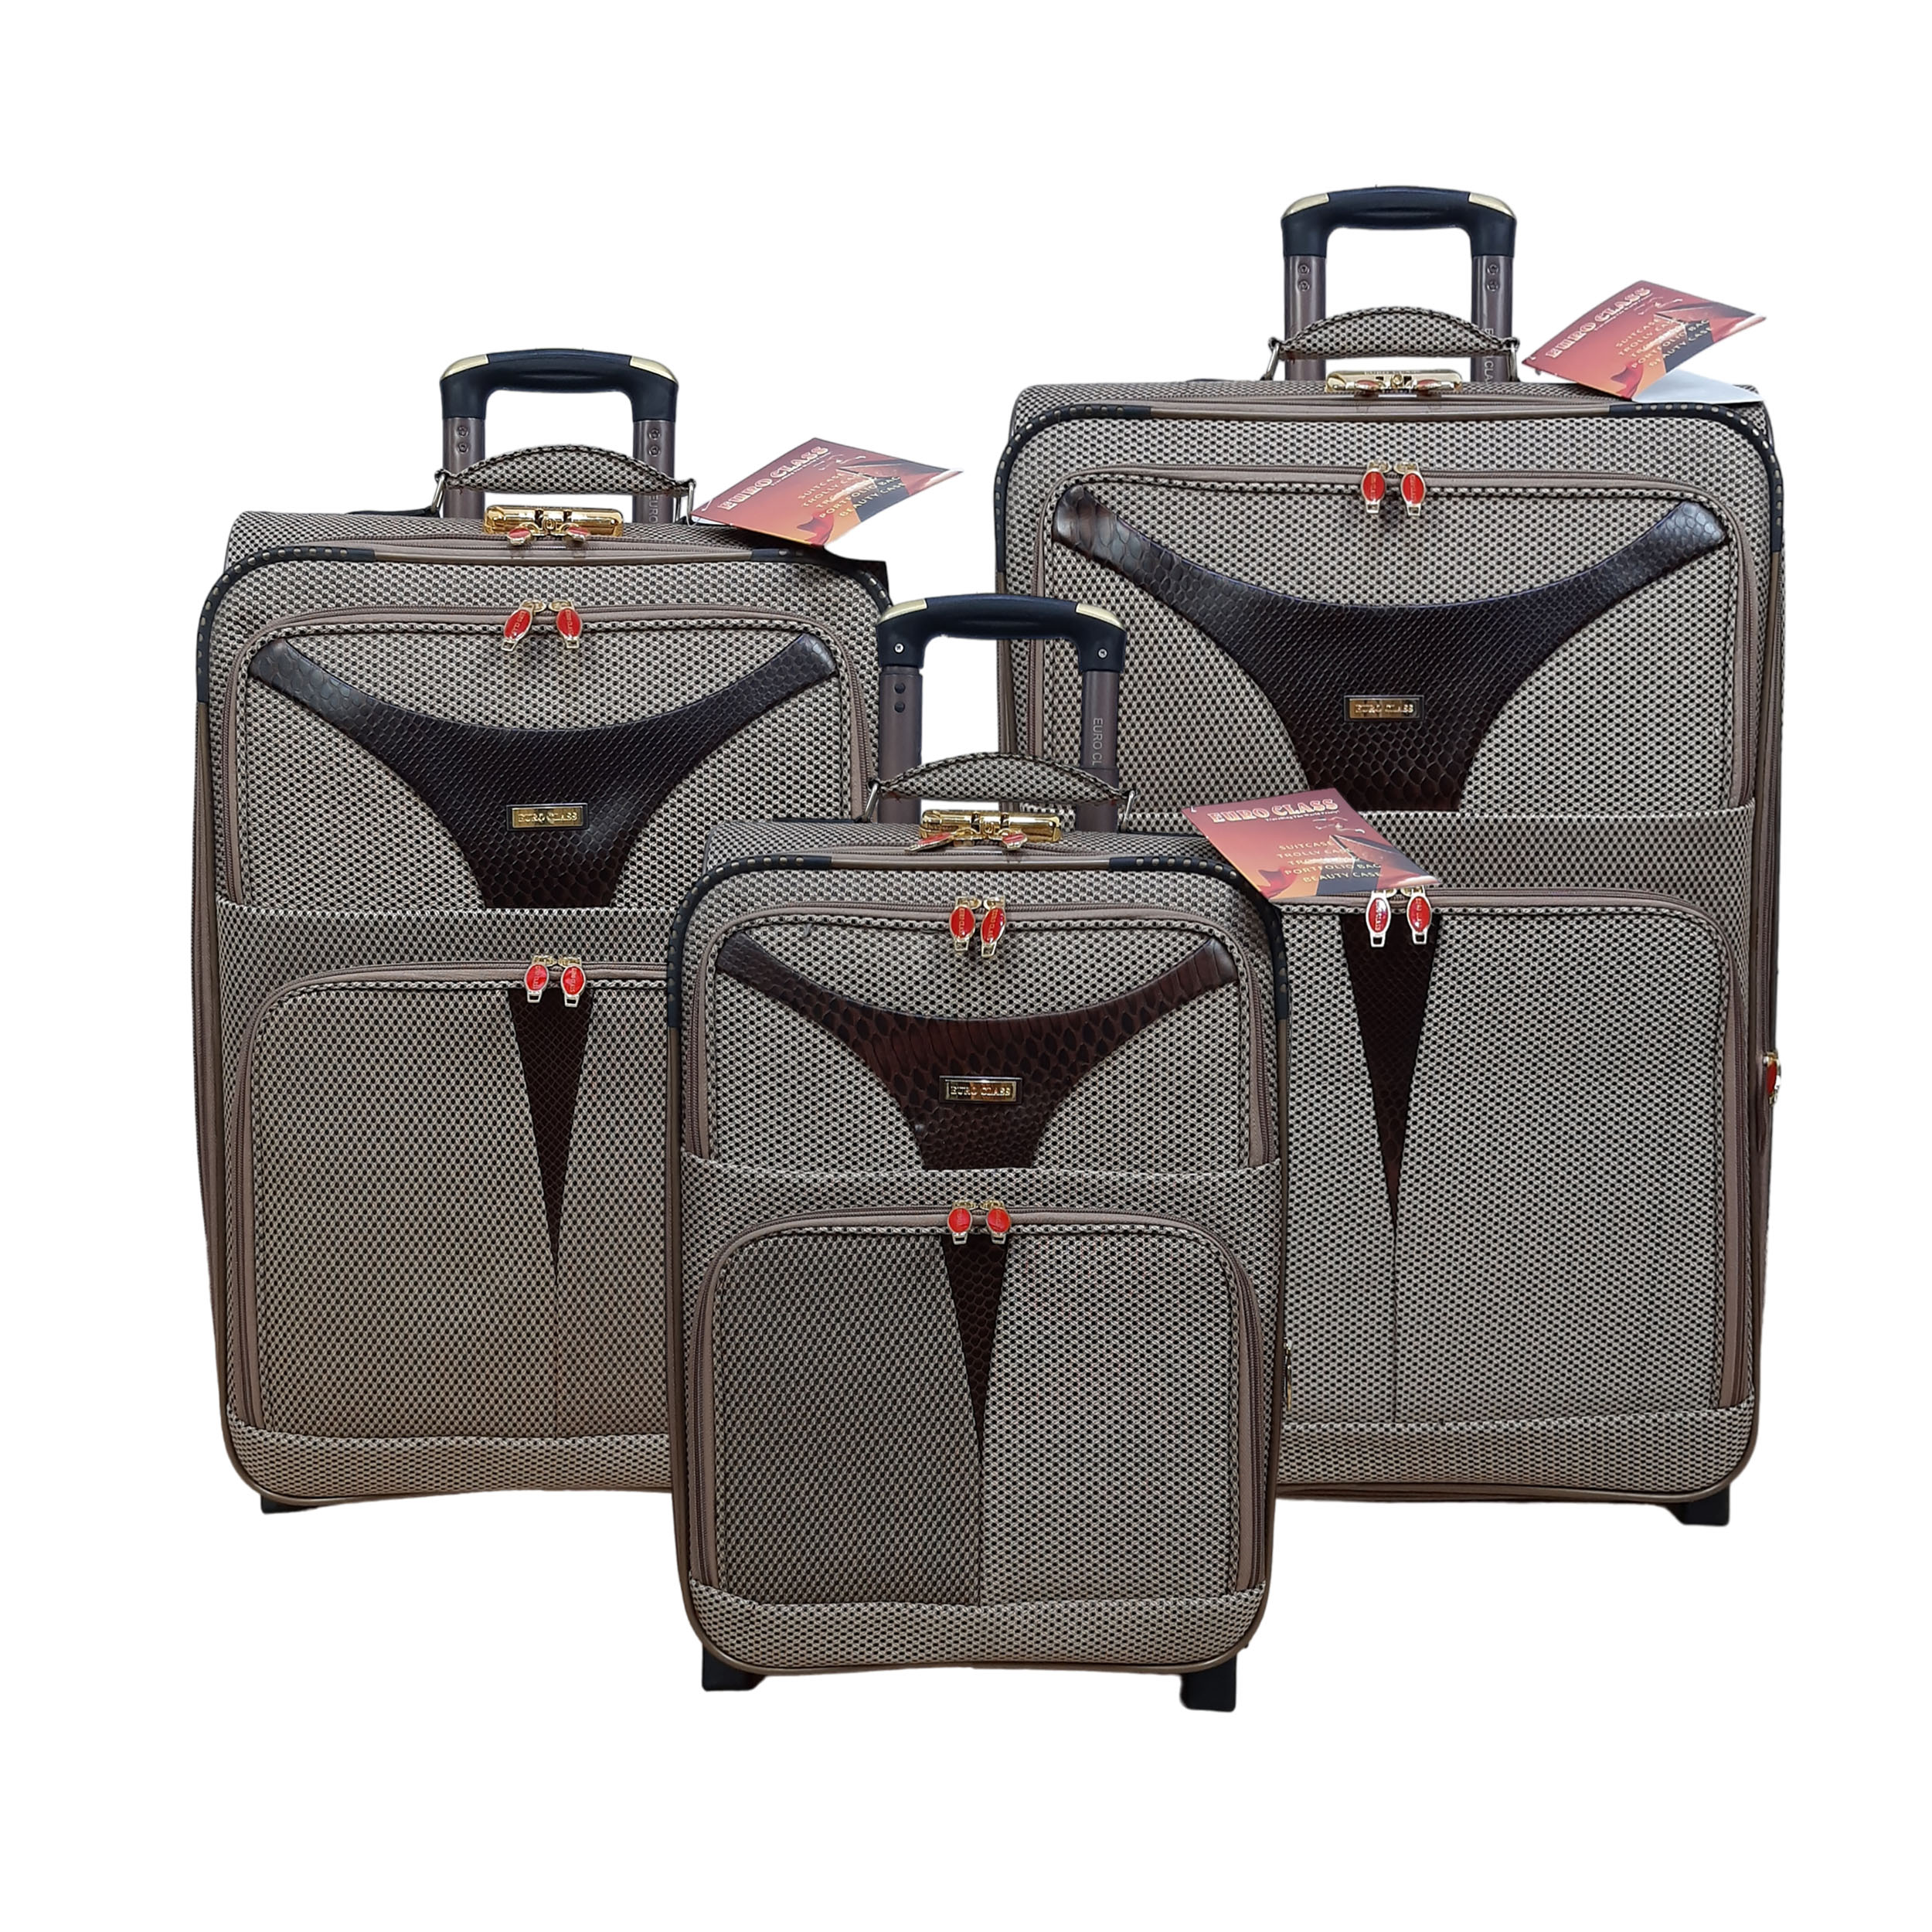 نکته خرید - قیمت روز مجموعه سه عددی چمدان یورو کلاس مدل K9050 خرید